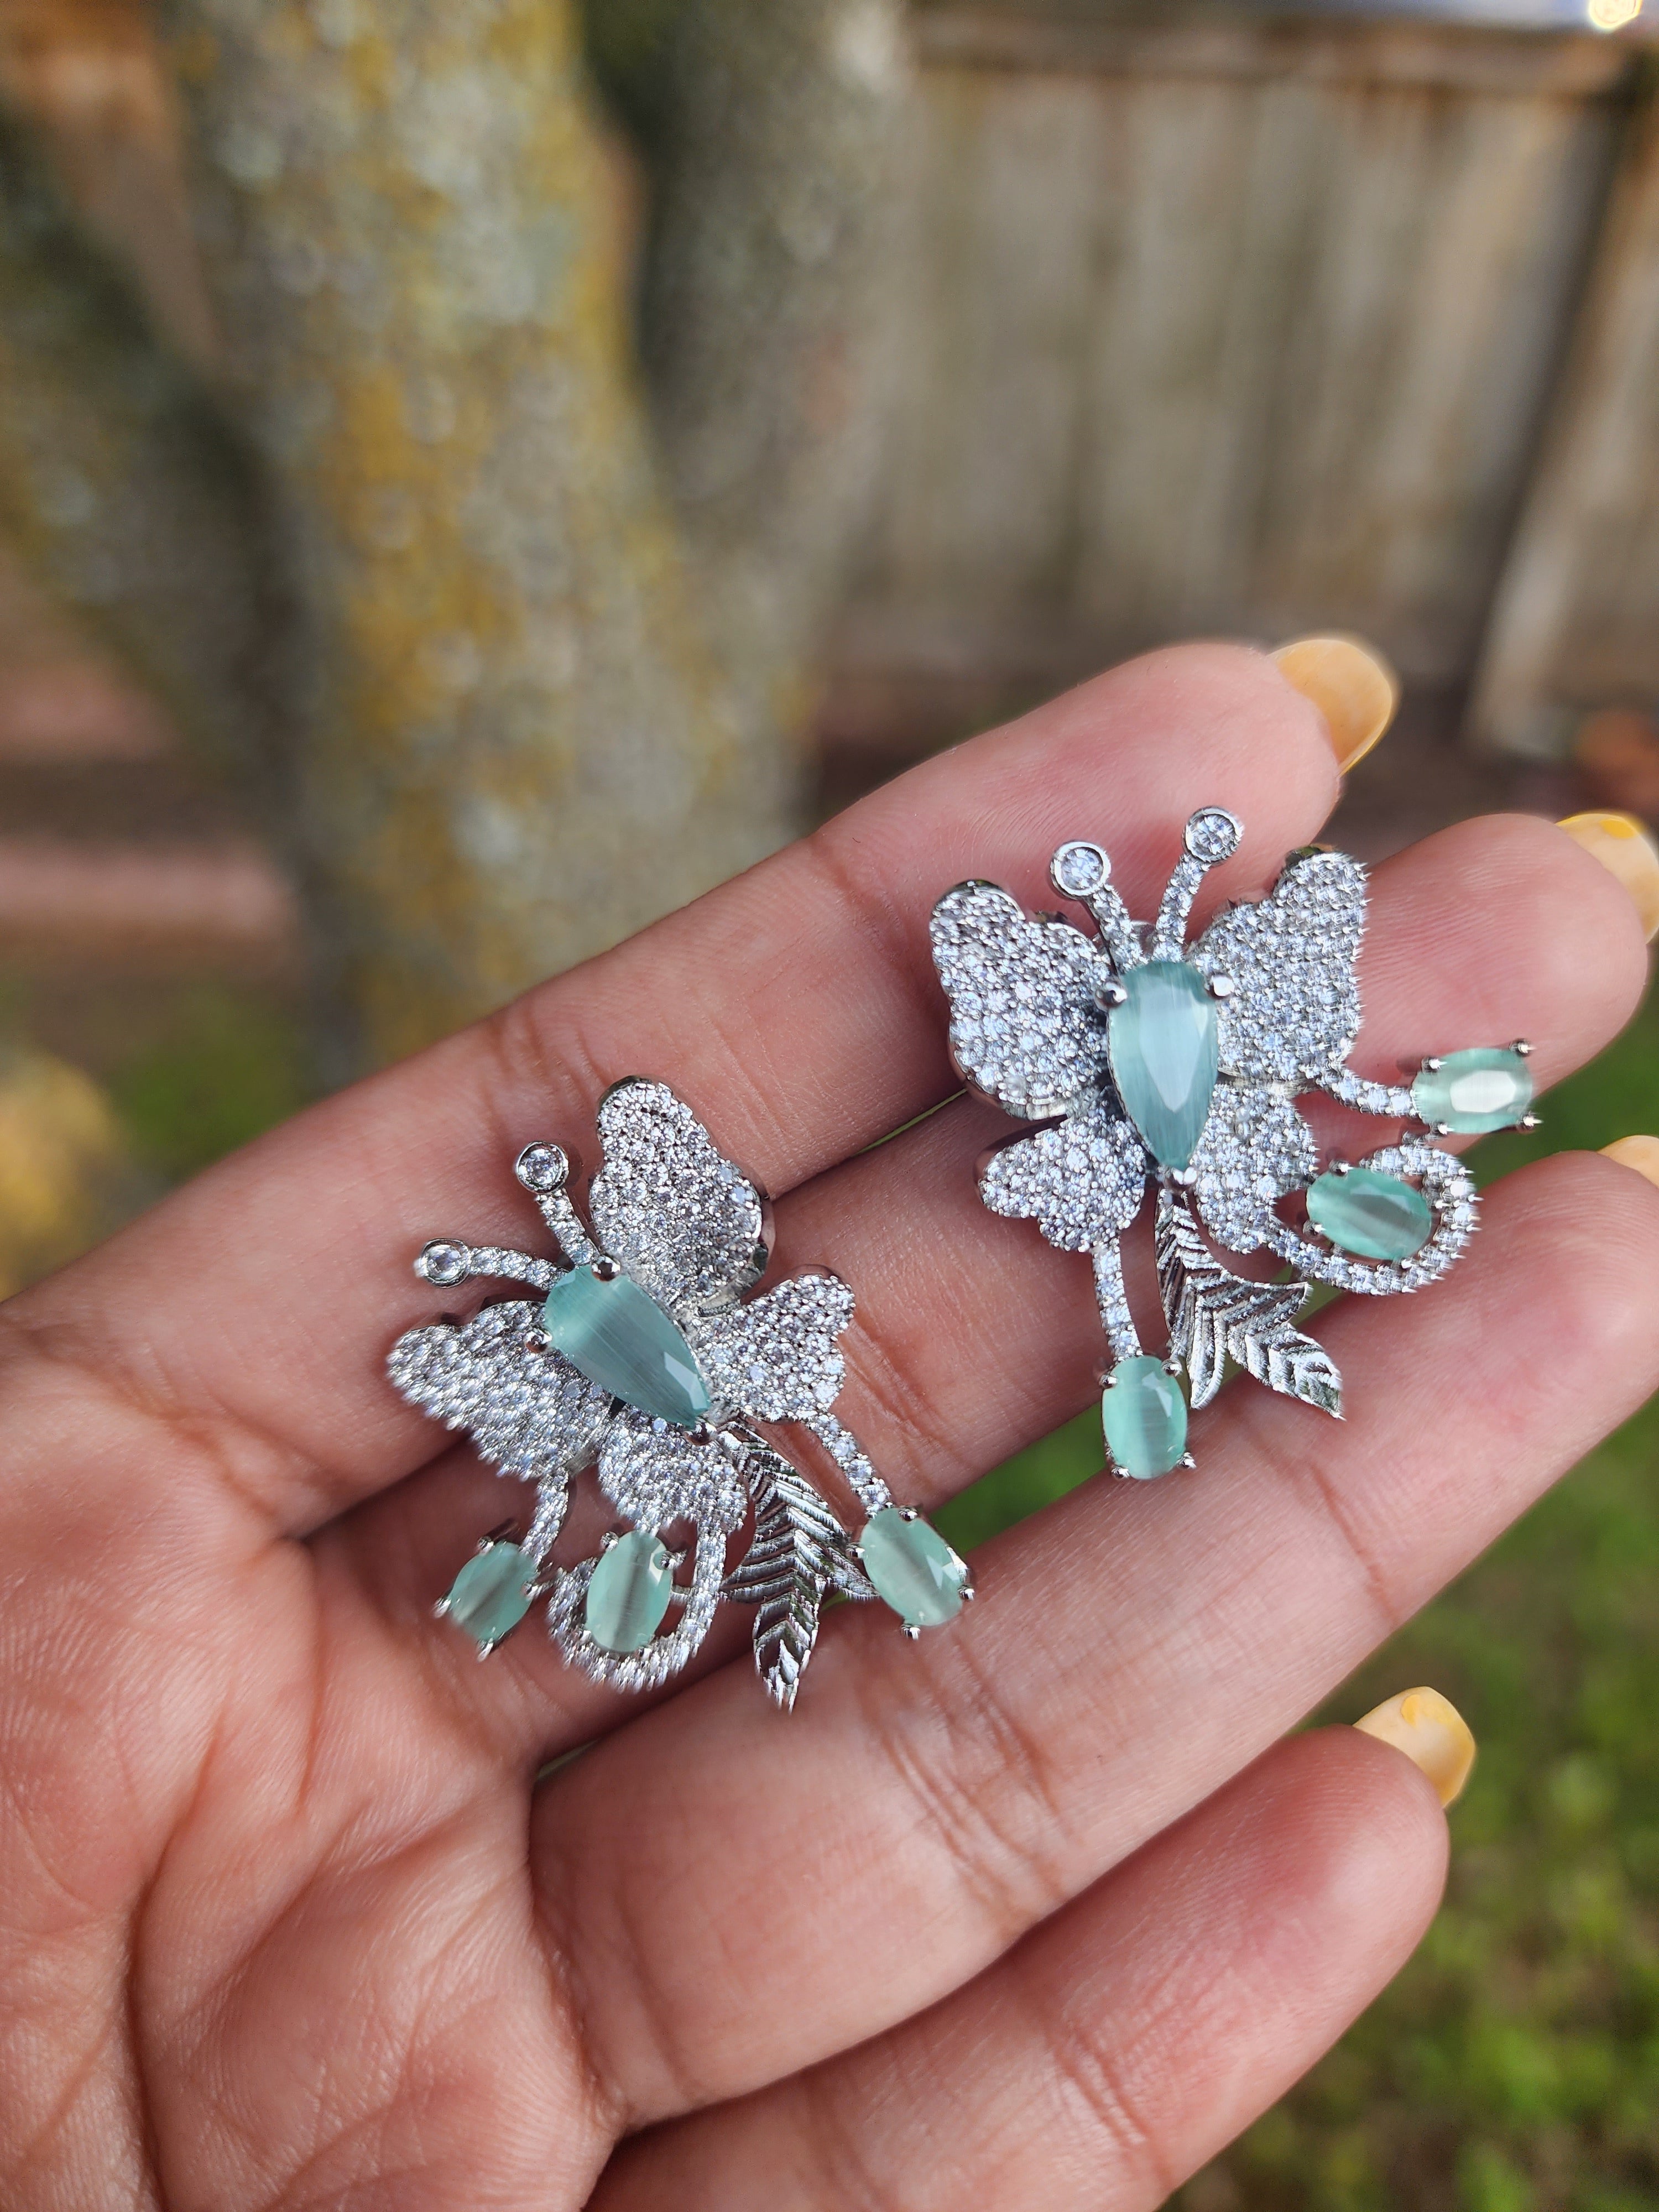 Butterfly CZ earrings